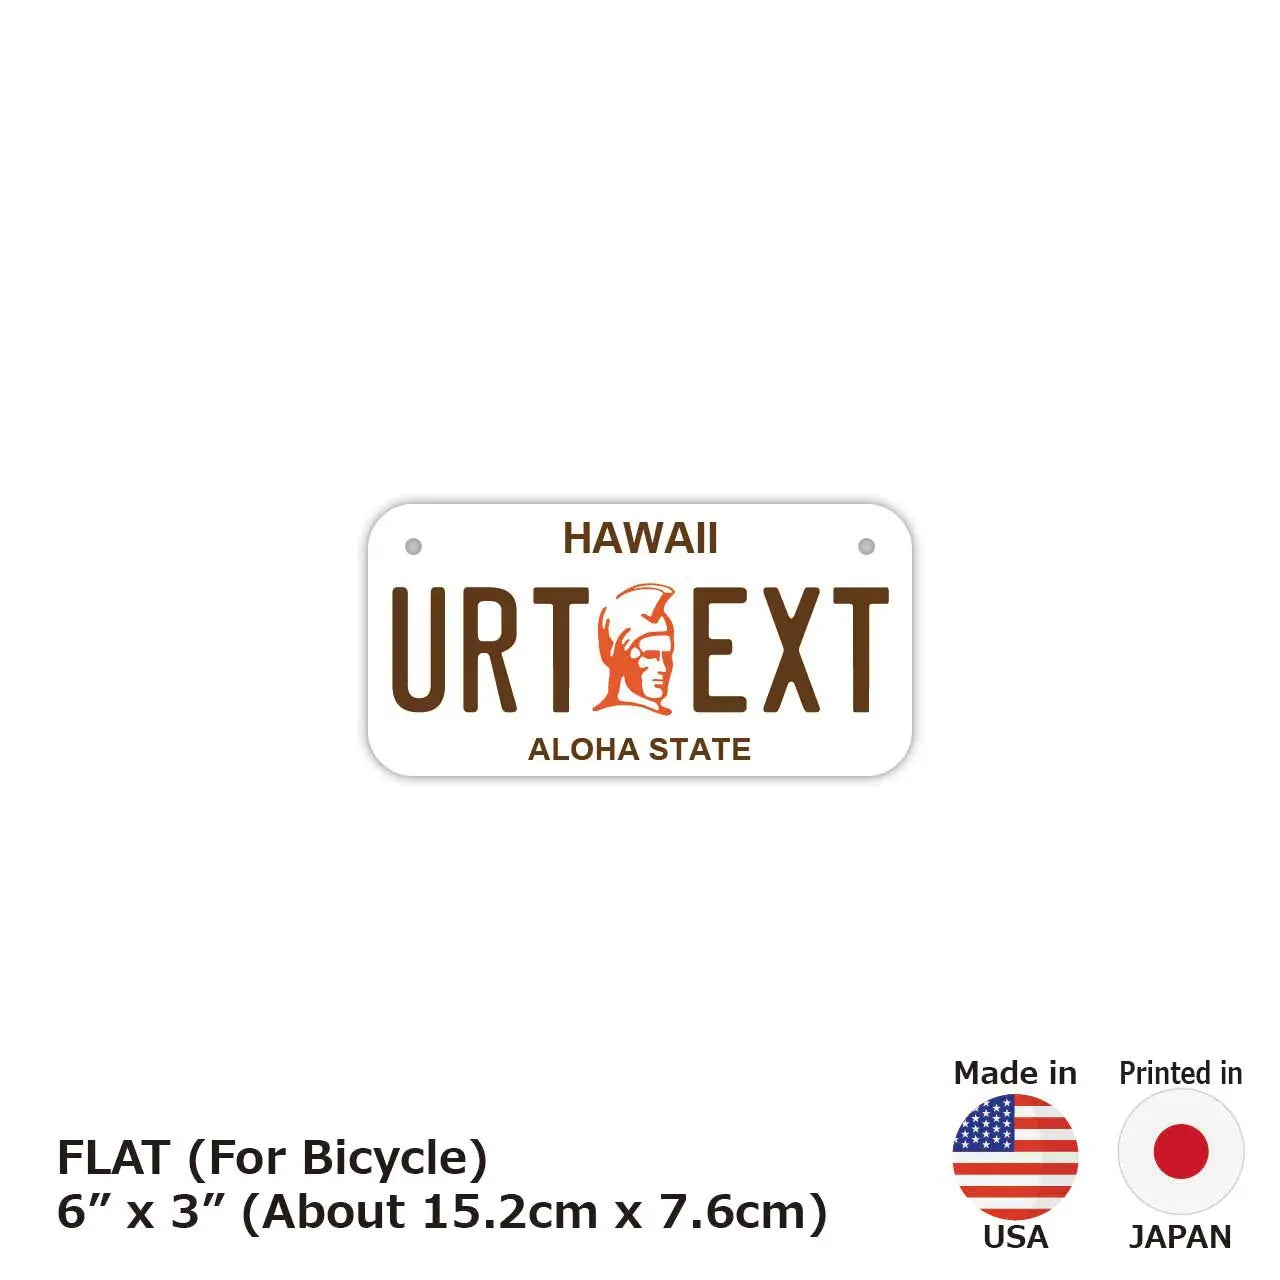 【小・自転車用】ハワイ・カメハメハ大王/オリジナルアメリカナンバープレート PL8HERO